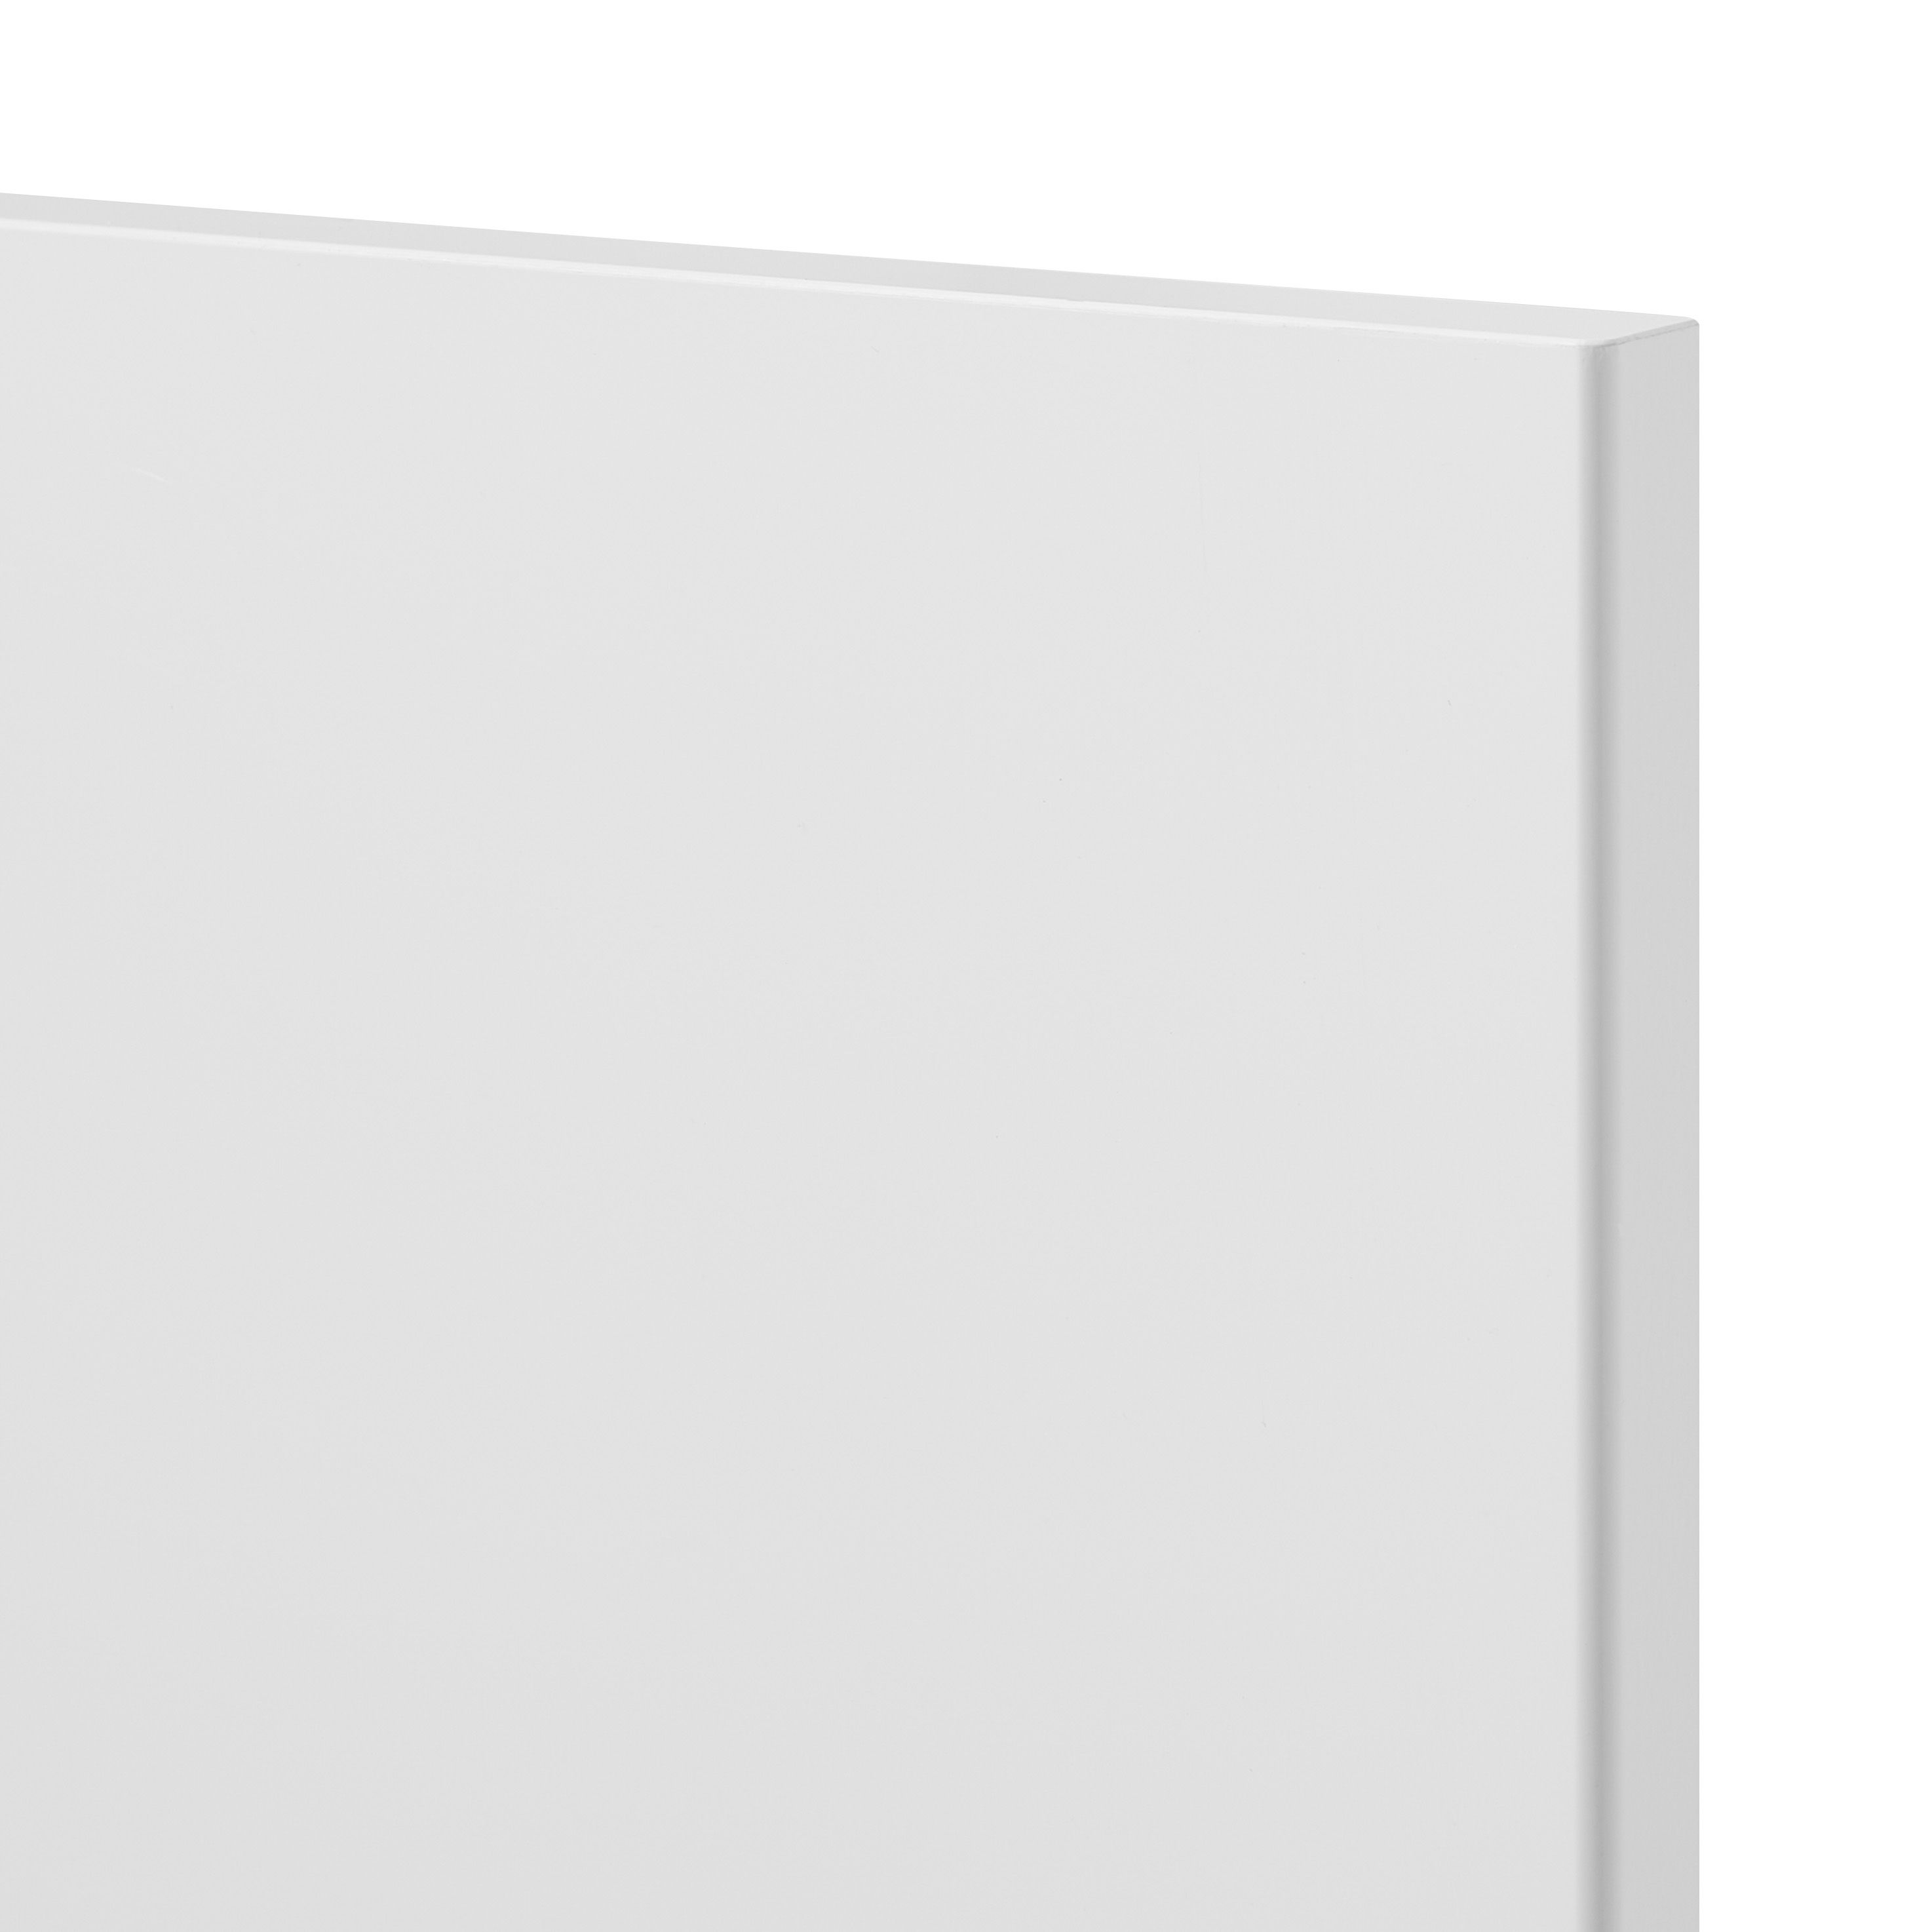 GoodHome Stevia Gloss white slab Tall larder Cabinet door (W)300mm (H)1467mm (T)18mm